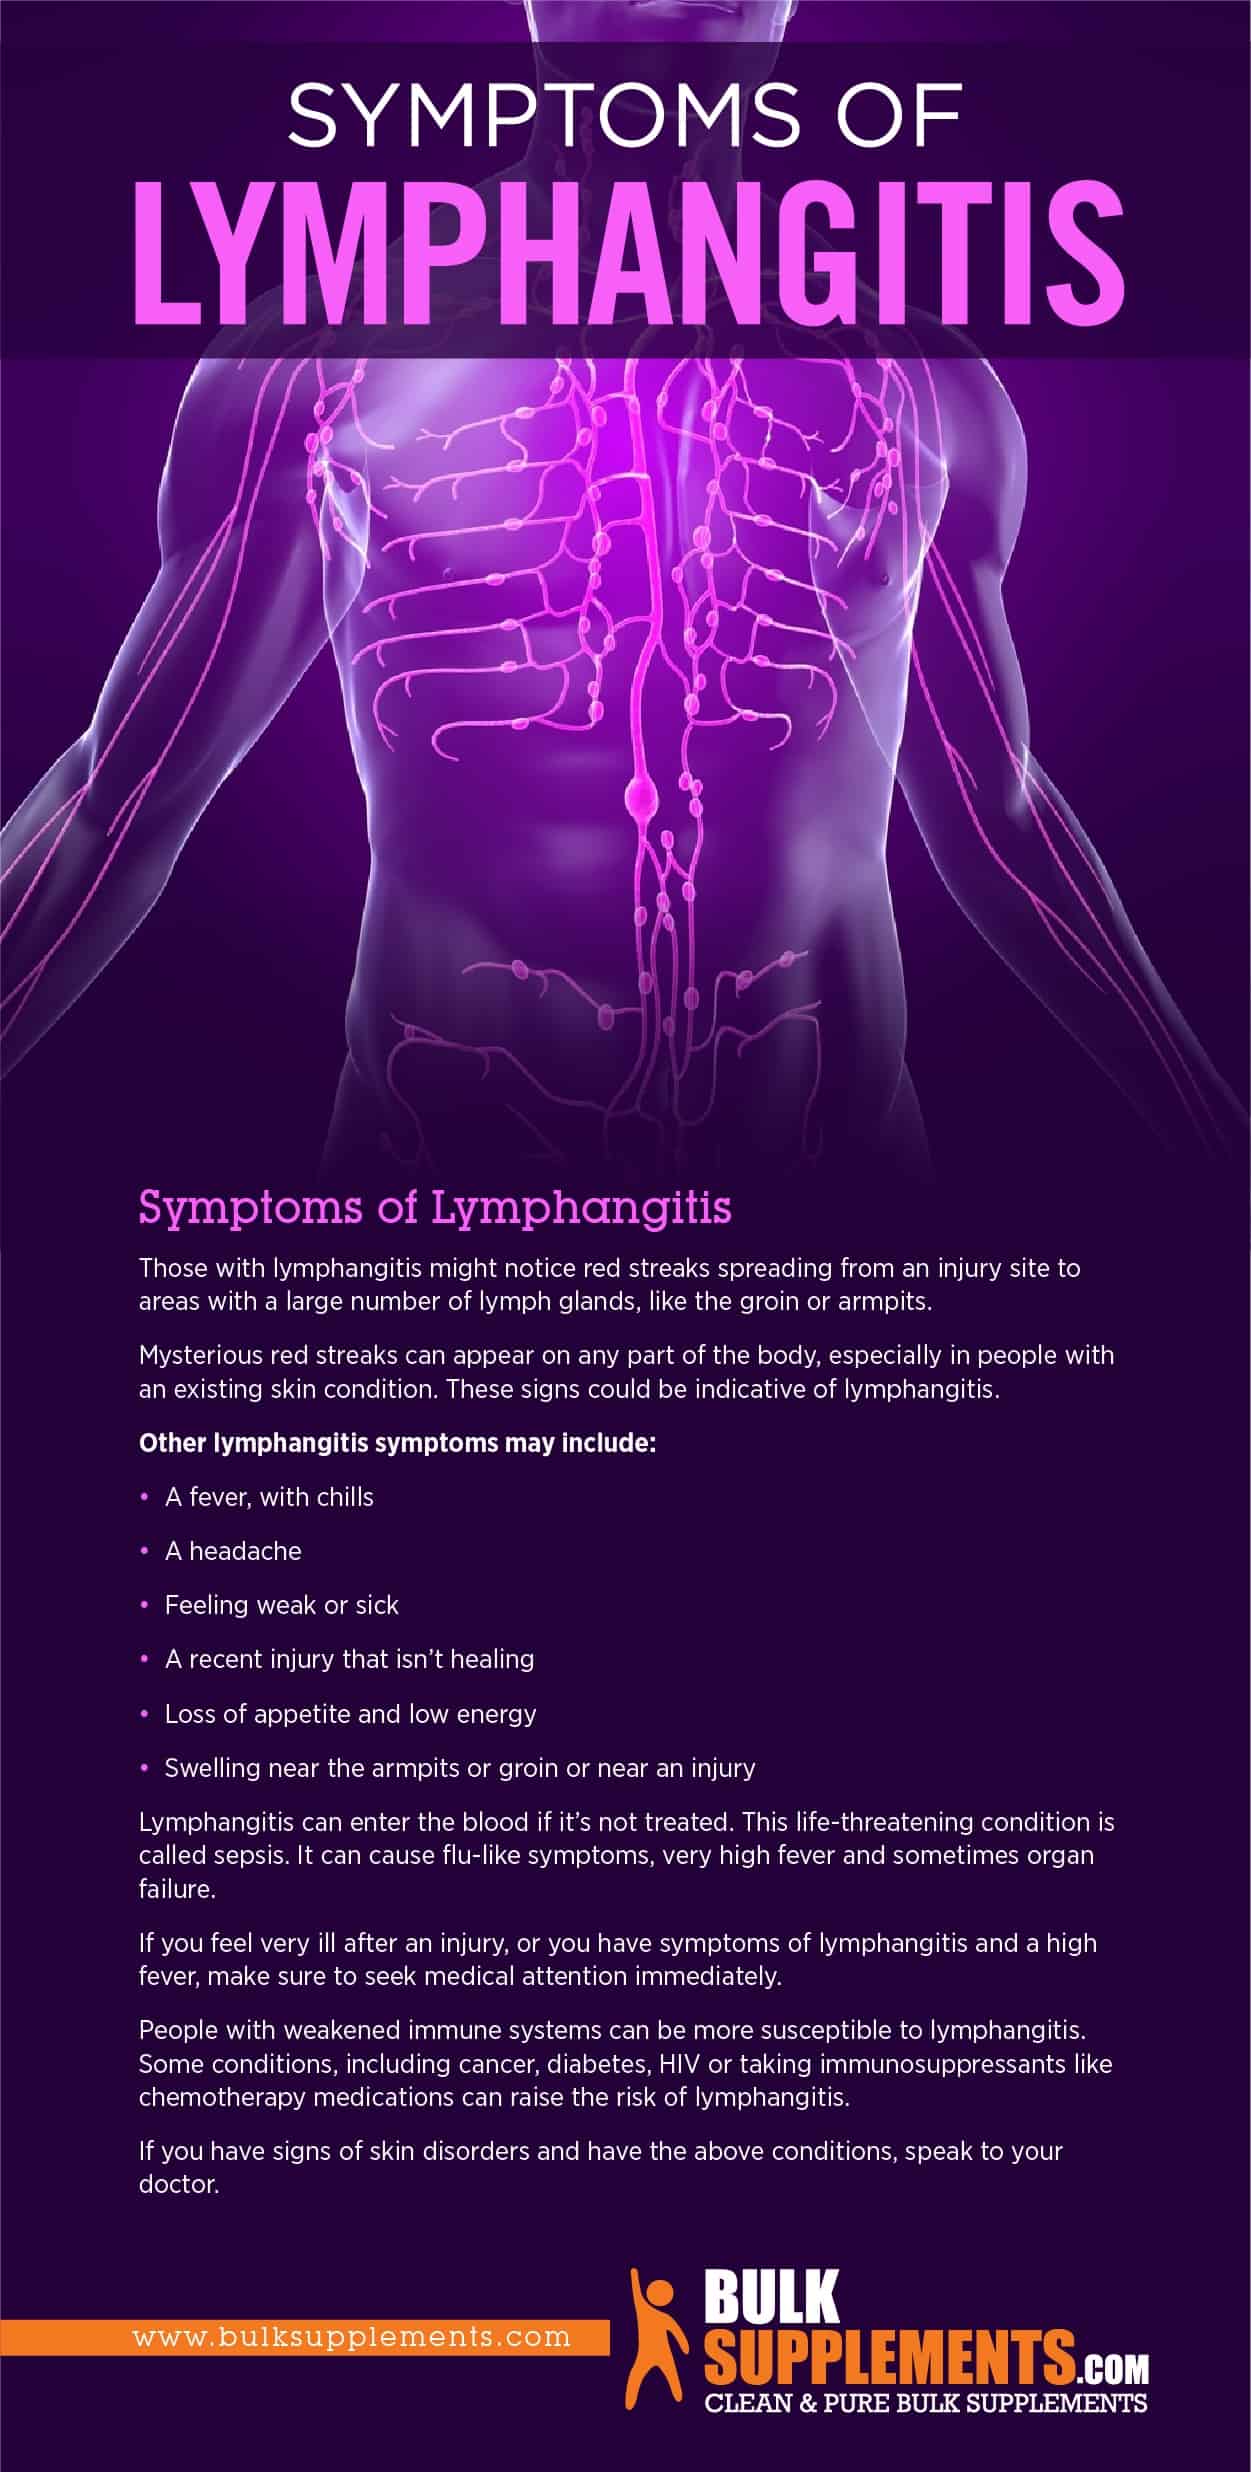 Symptoms of Lymphangitis